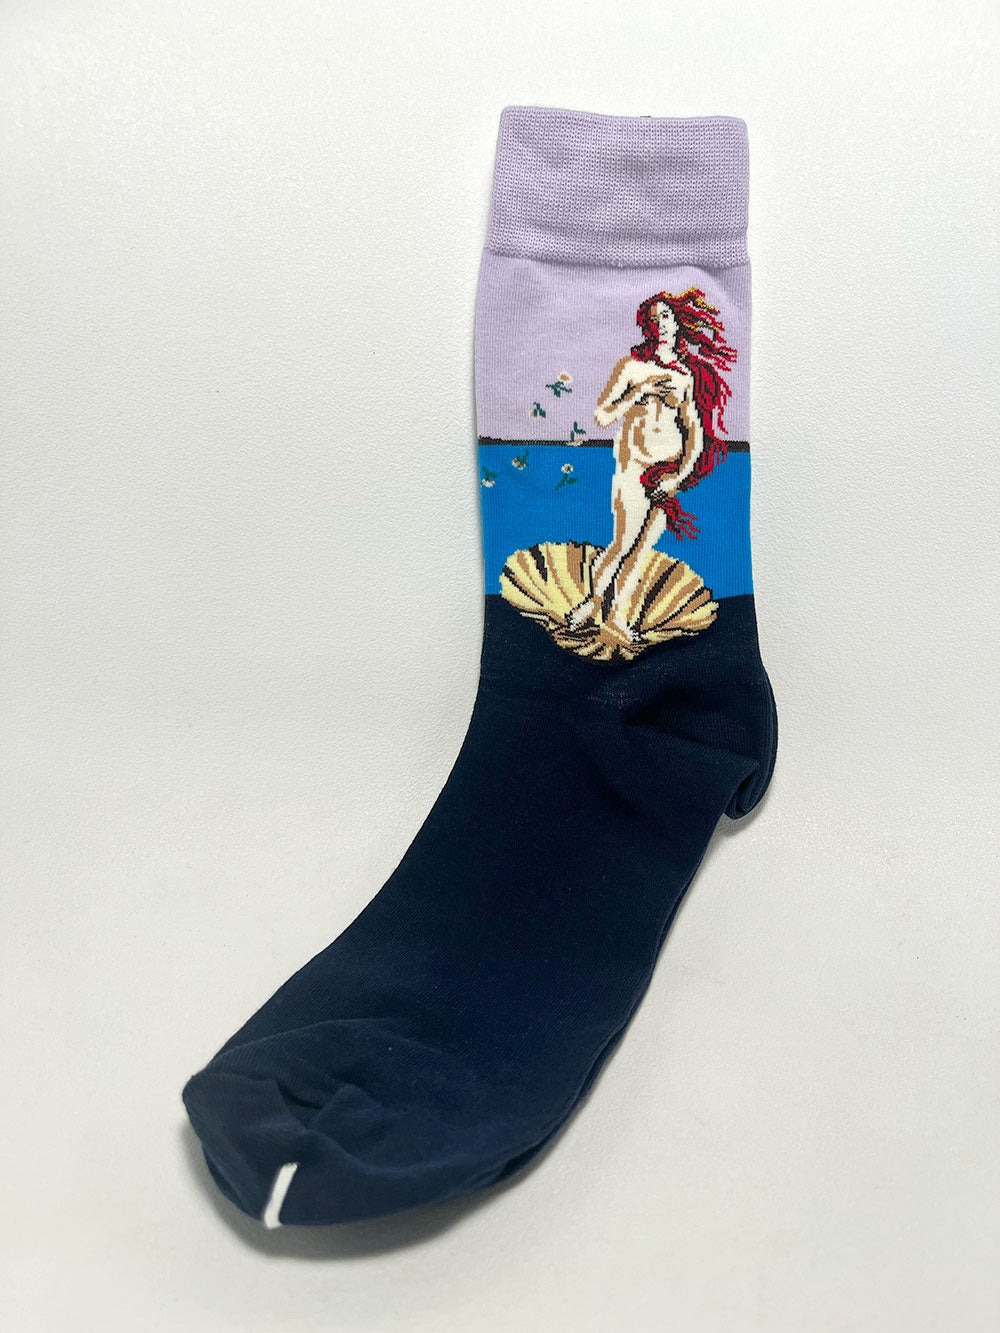 Rebel sock one